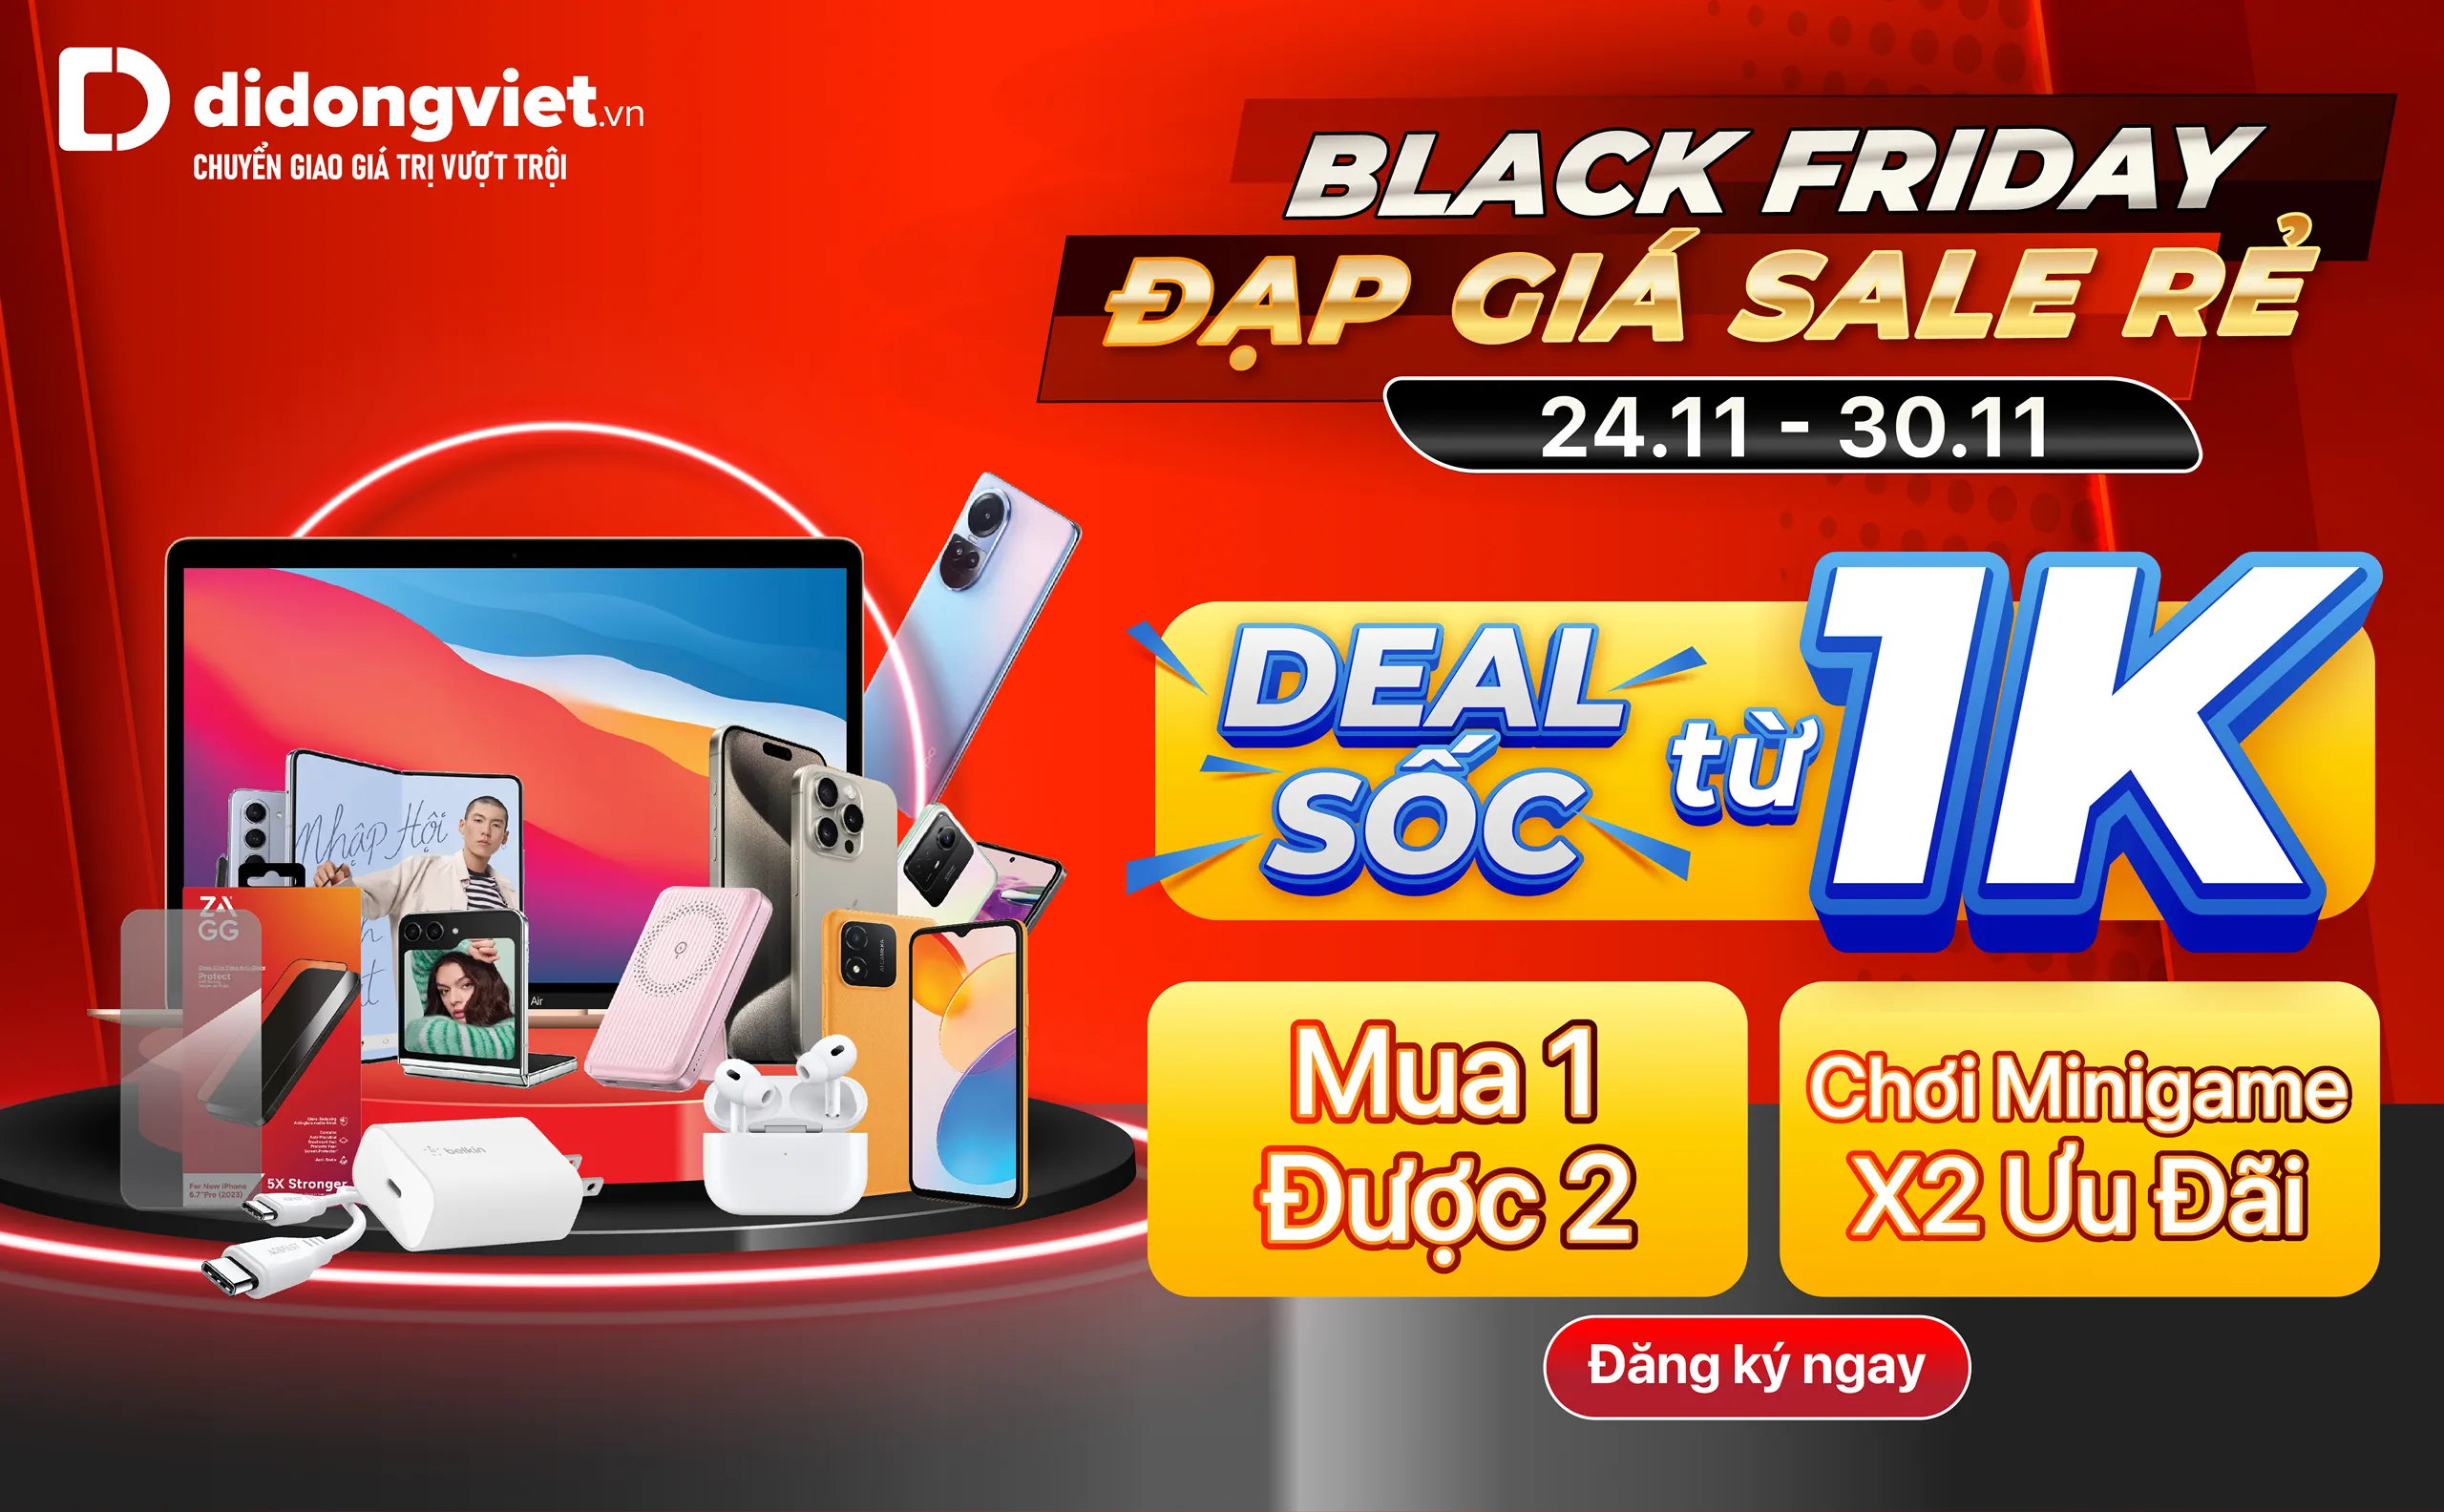 Black Friday: Săn deal công nghệ giá chỉ từ 1,000 đồng, mua 1 tặng 1